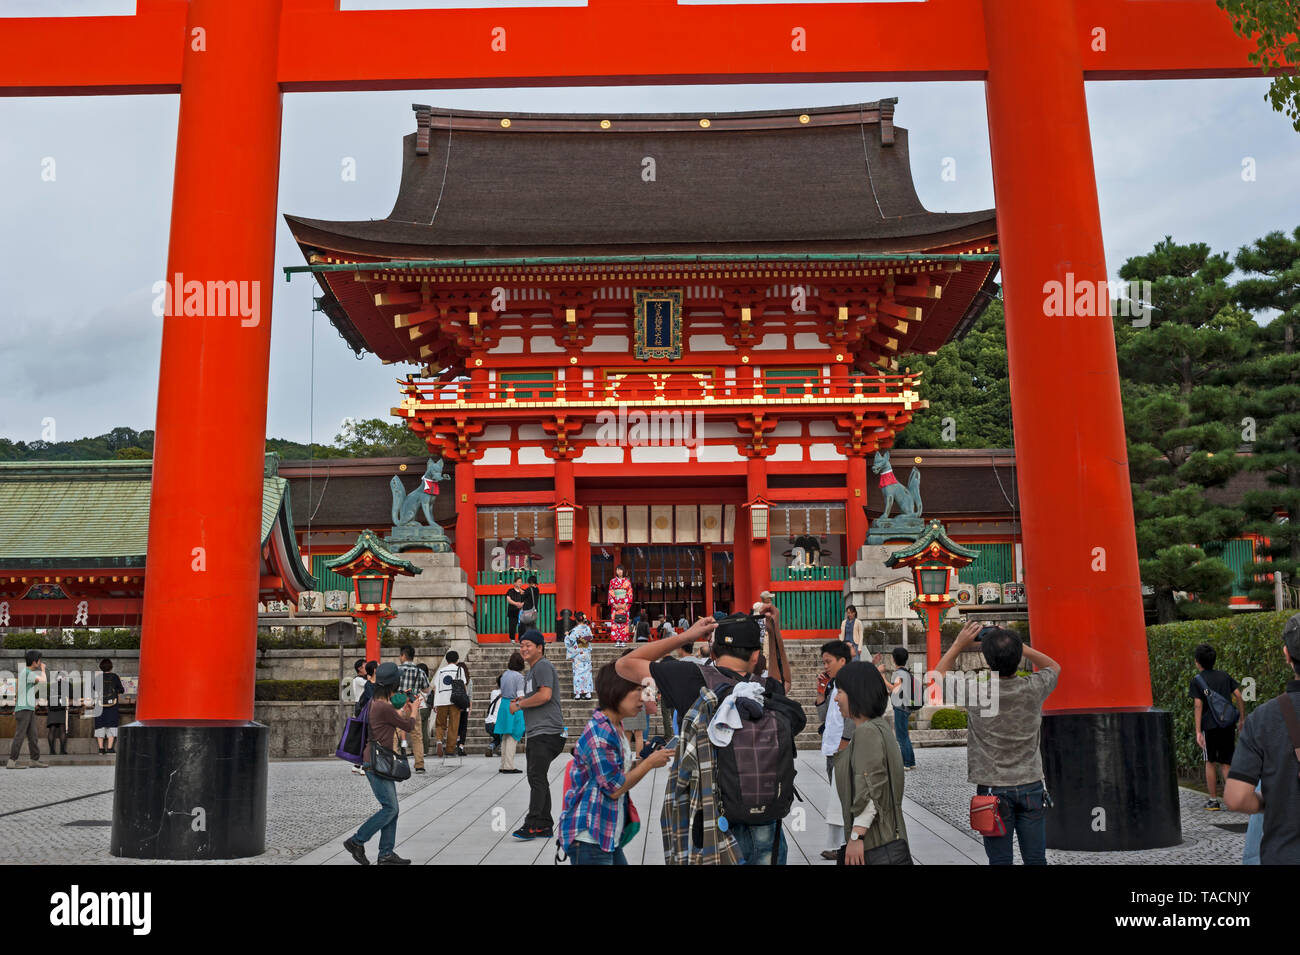 Sorprendentemente ornamentada Fushimi inara y santuario sintoísta Torii (puerta de entrada) en el sur de Kyoto, Japón Foto de stock